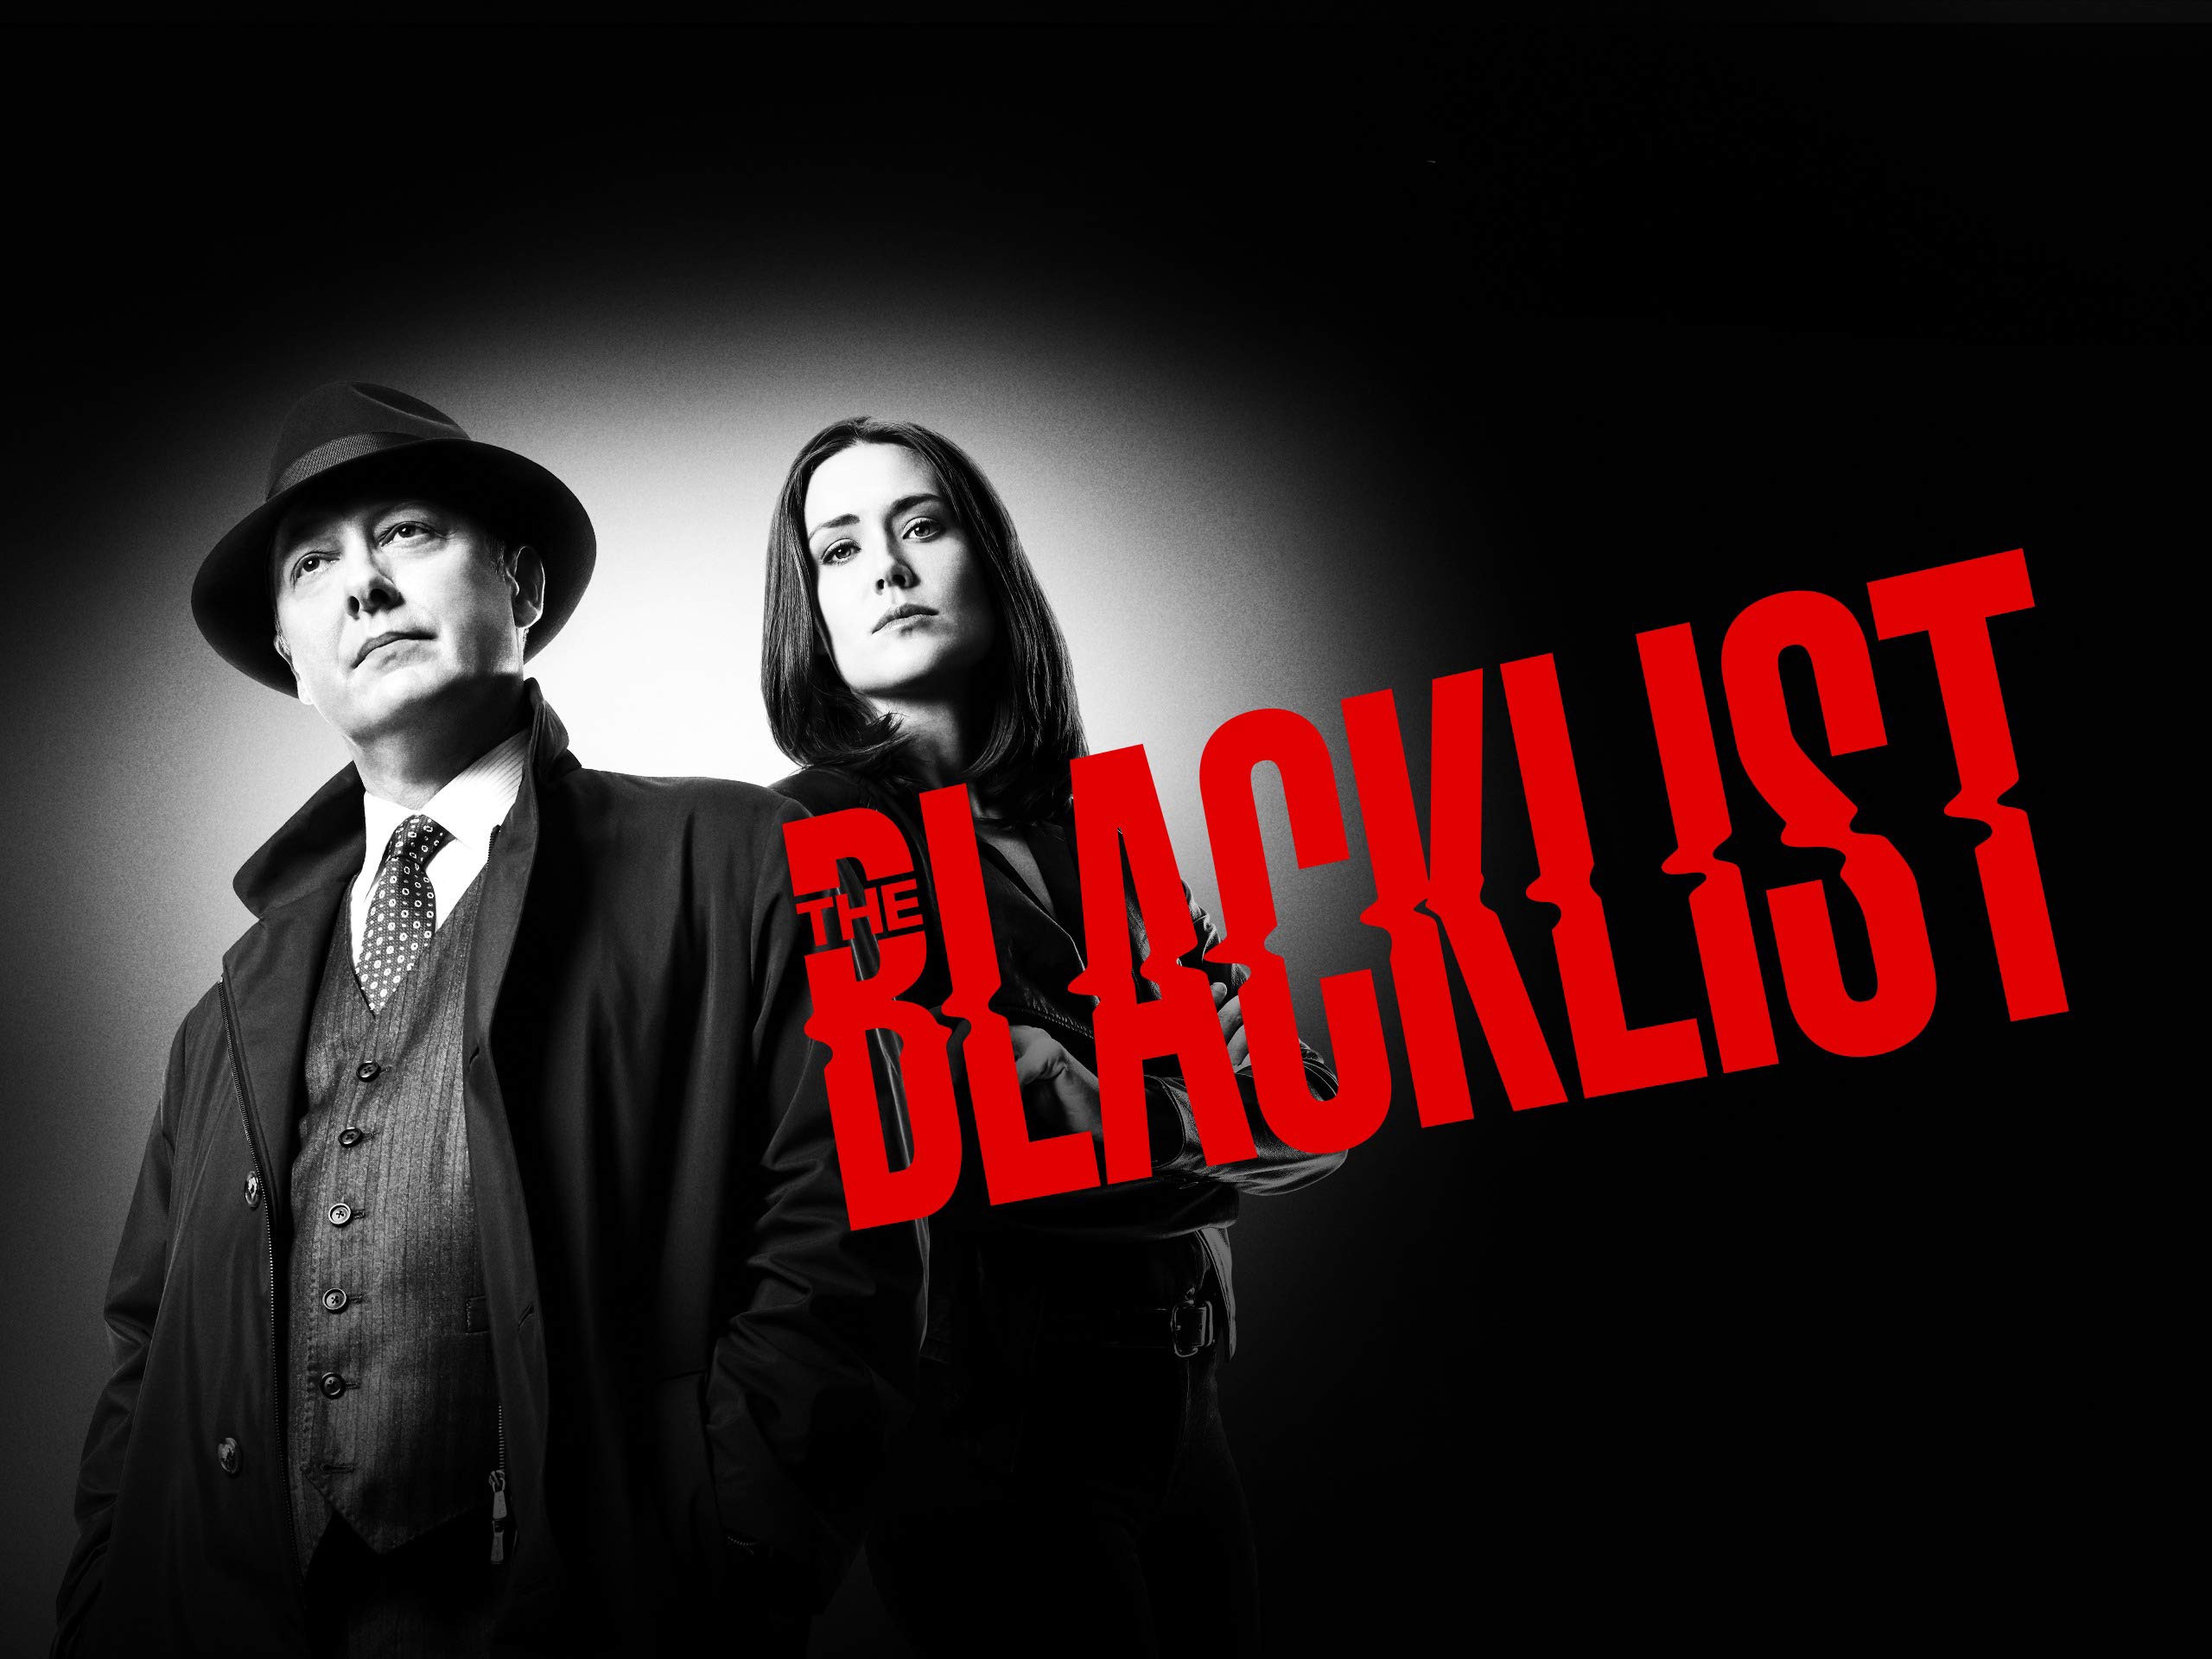 The-Blacklist-episode-13